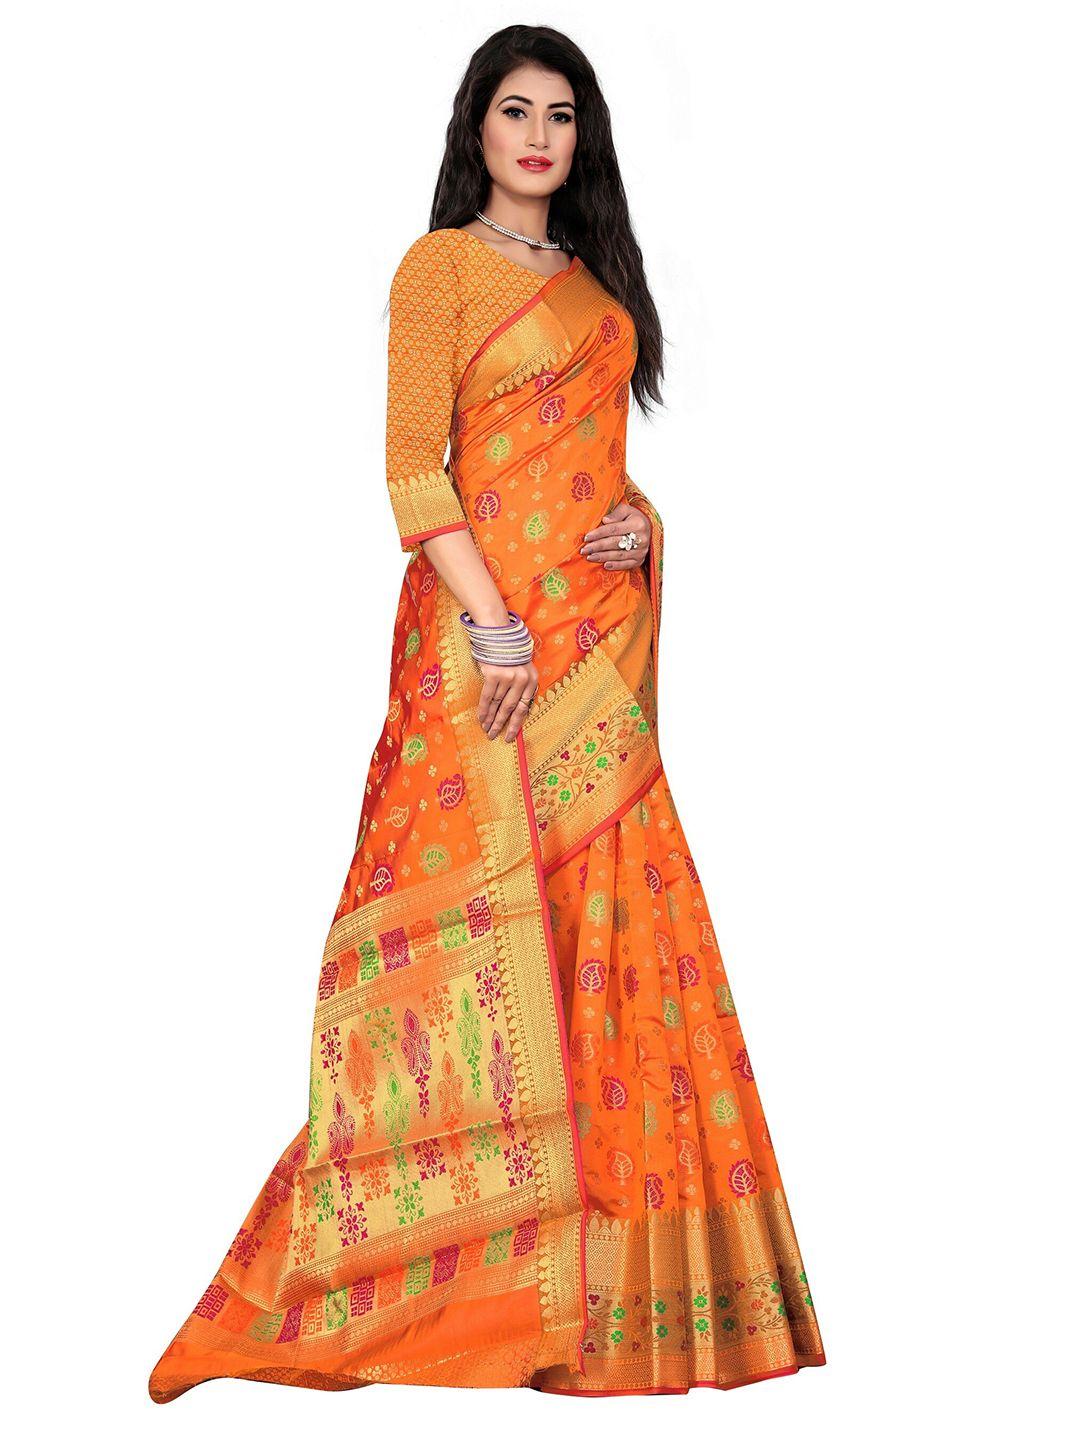 rivana--woven-design-zari-banarasi-saree-with-blouse-piece